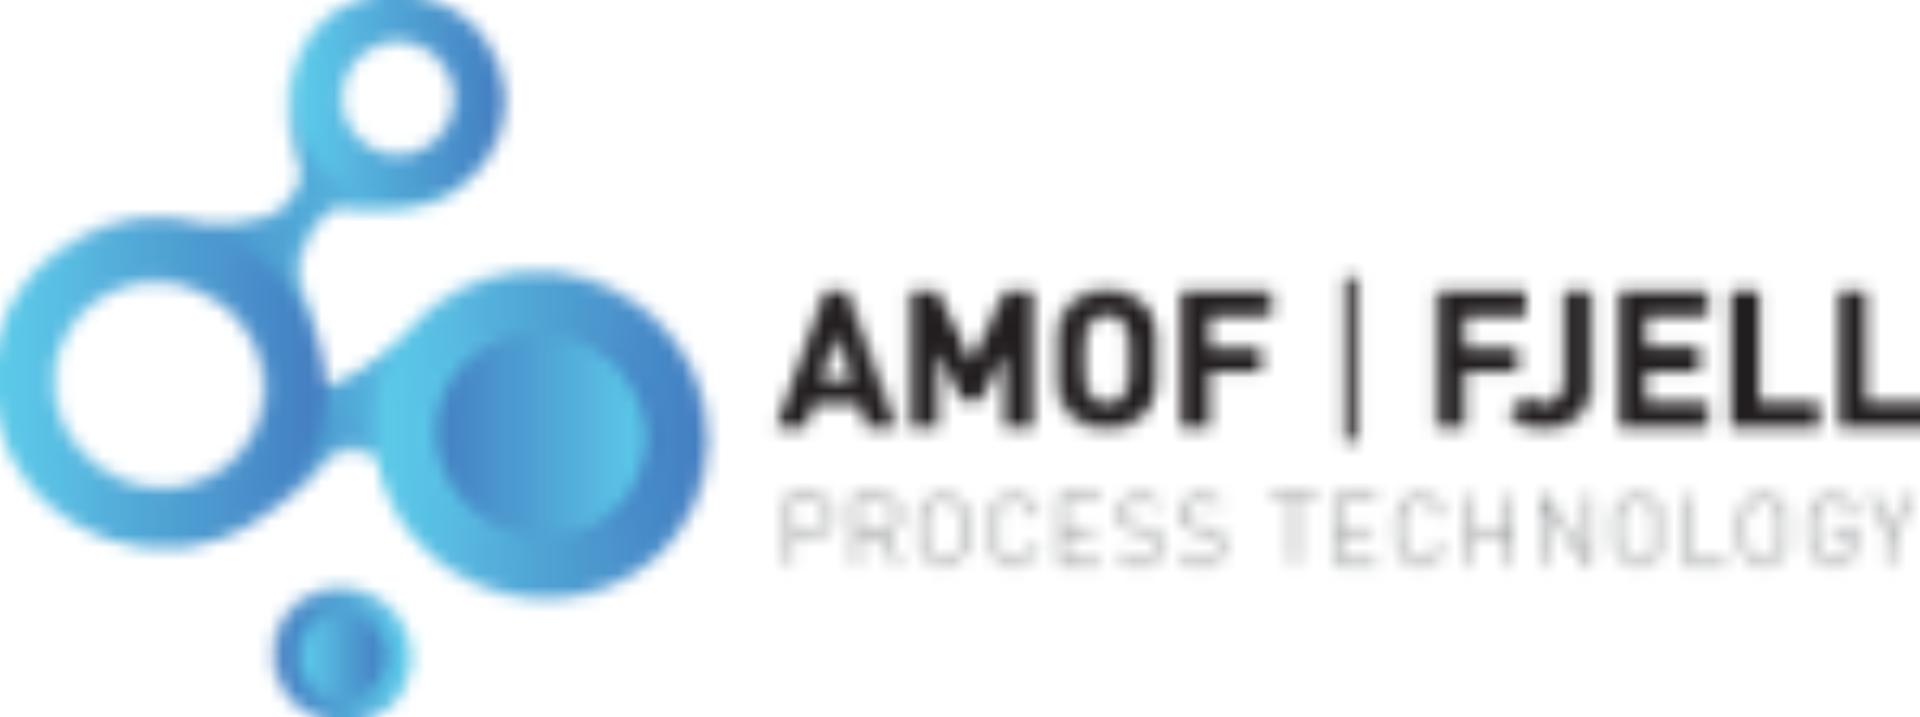 AMOF - FJELL PROCESS TECHNOLOGY AS